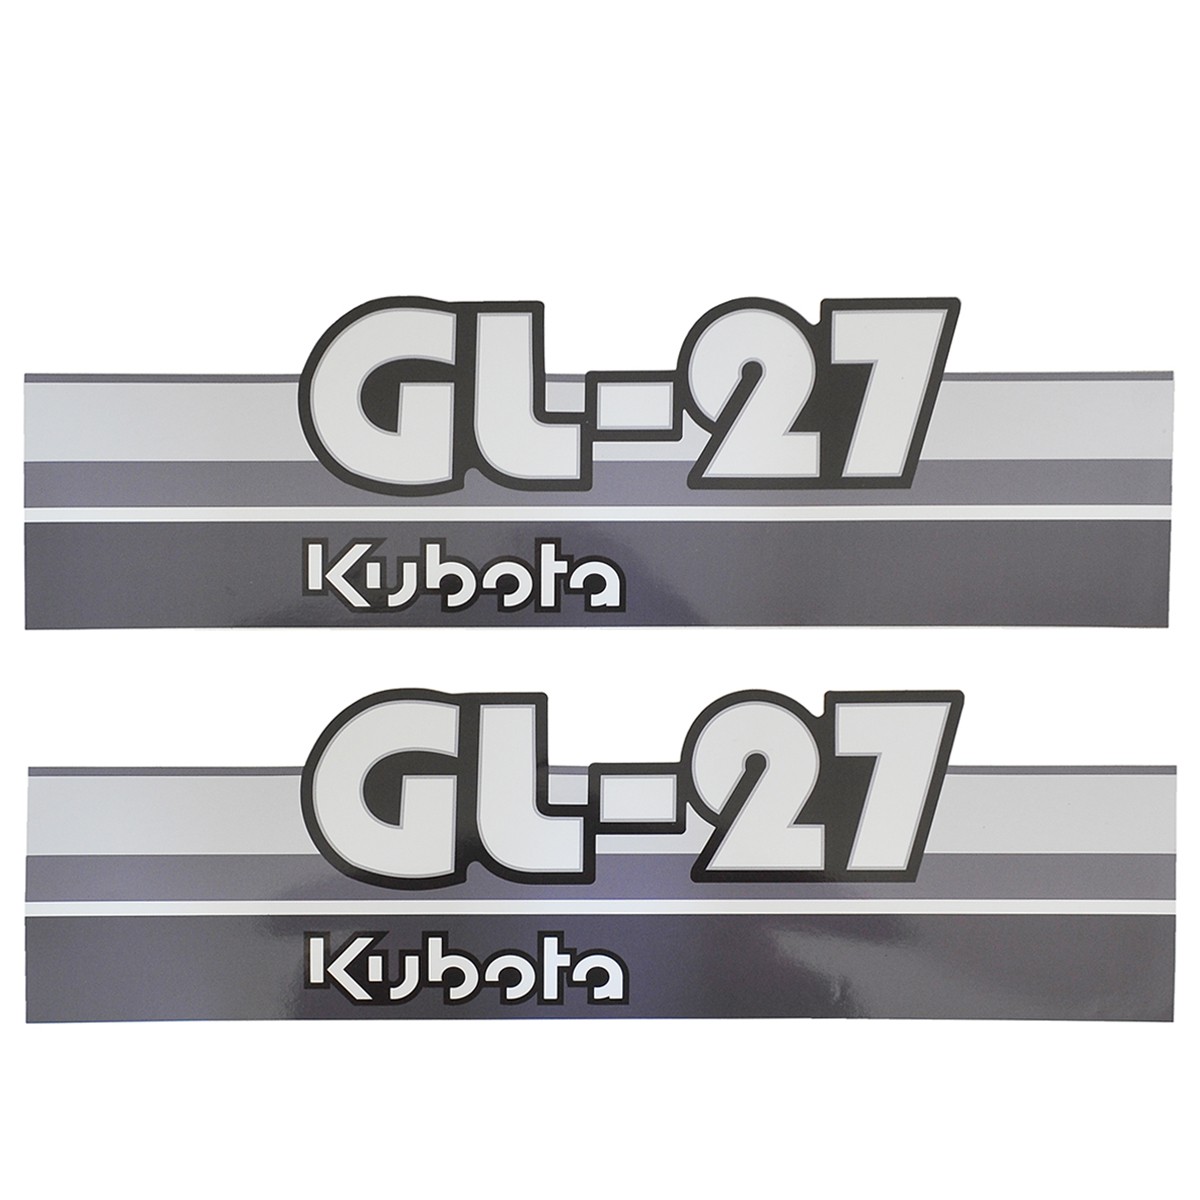 Adhesivos Kubota GL27